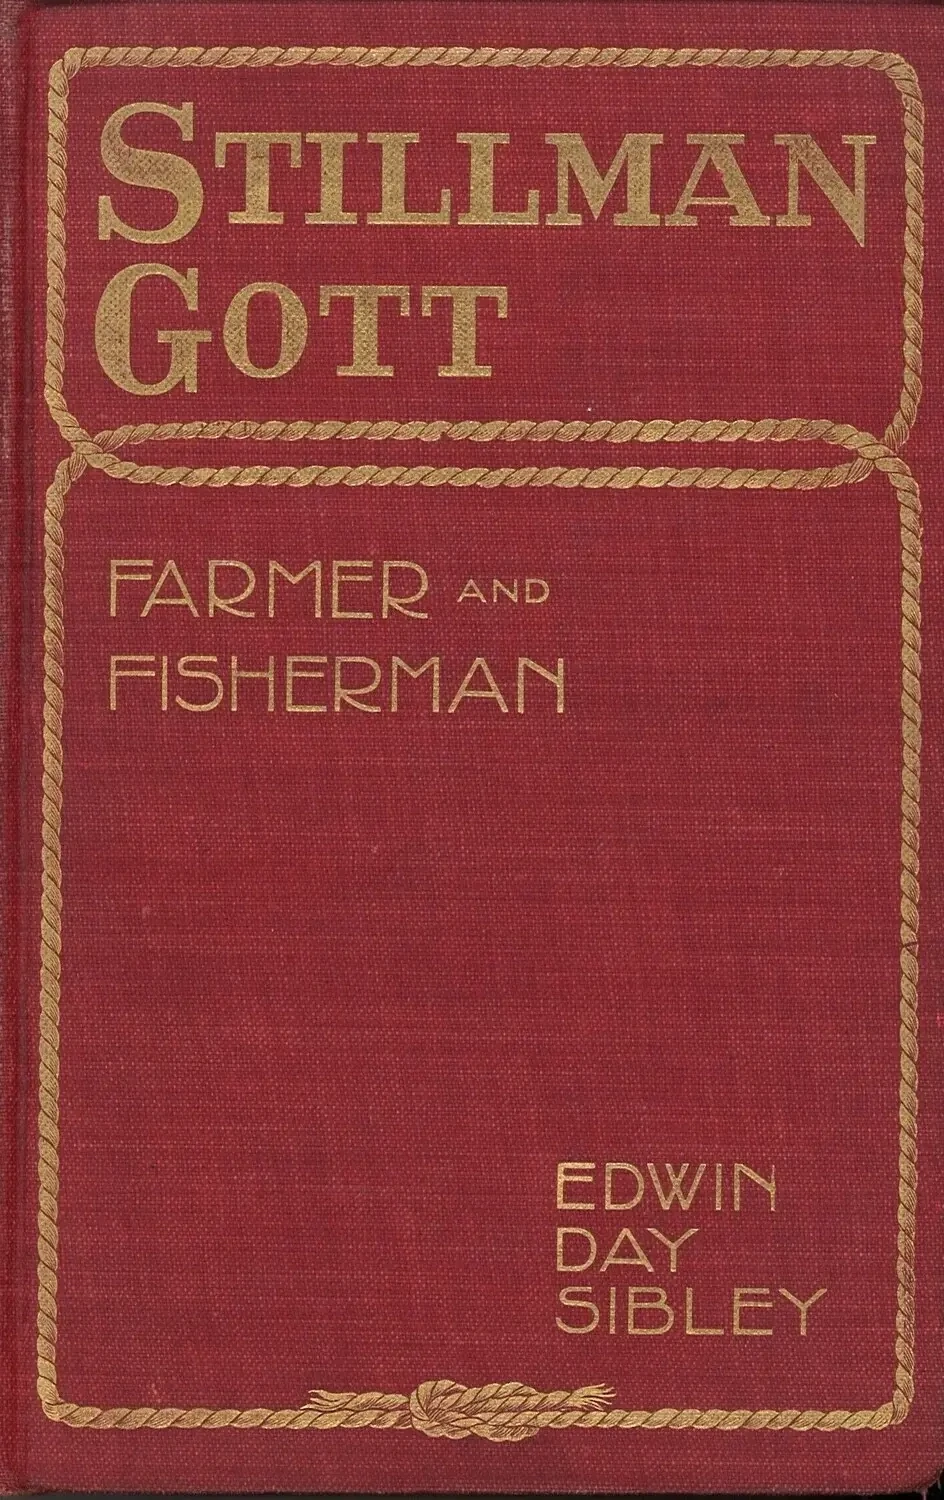 Stillman Gott: Farmer and Fisherman by Edwin Day Sibley